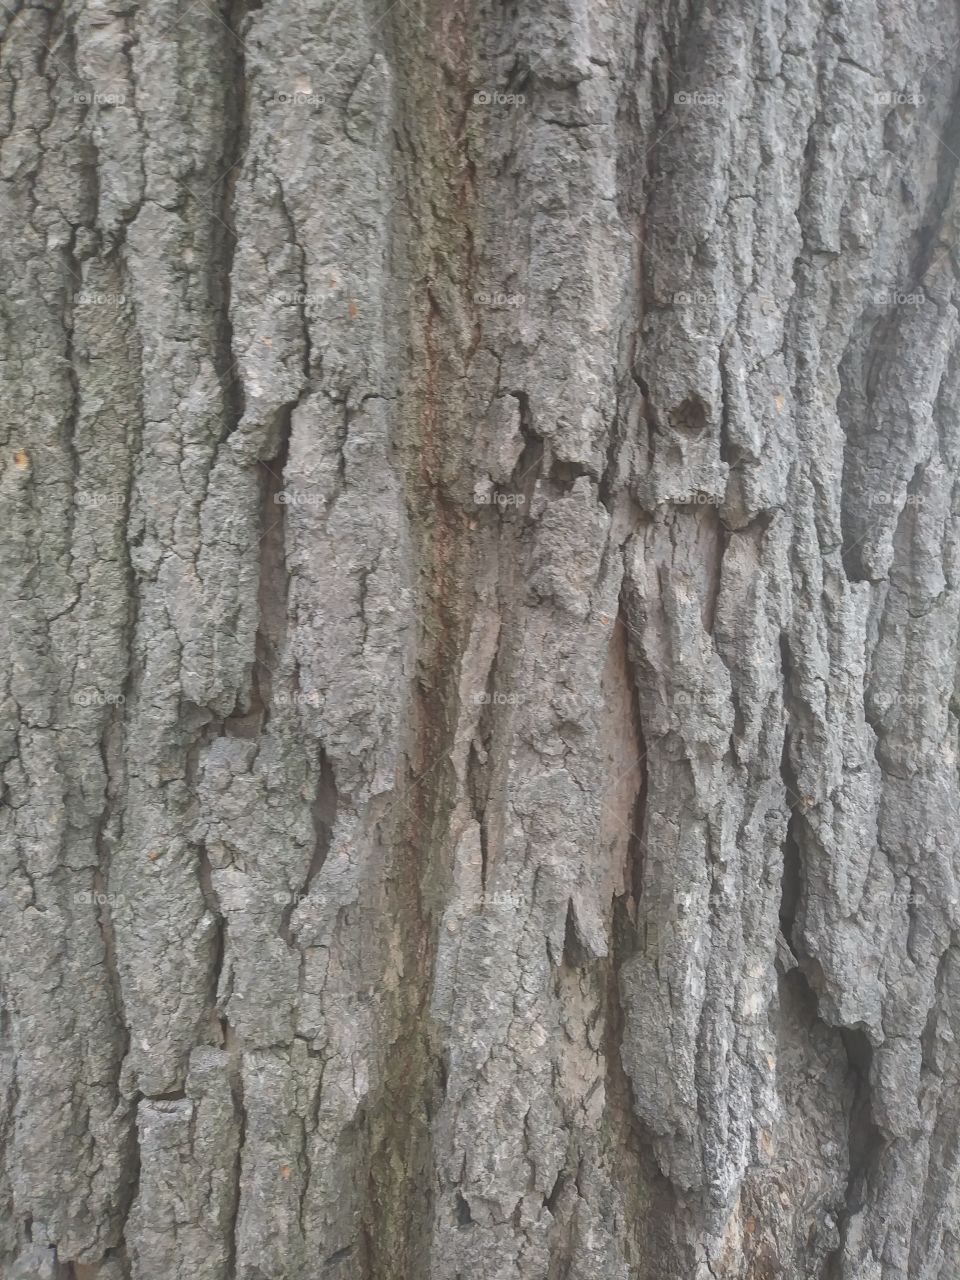 TREE BARK